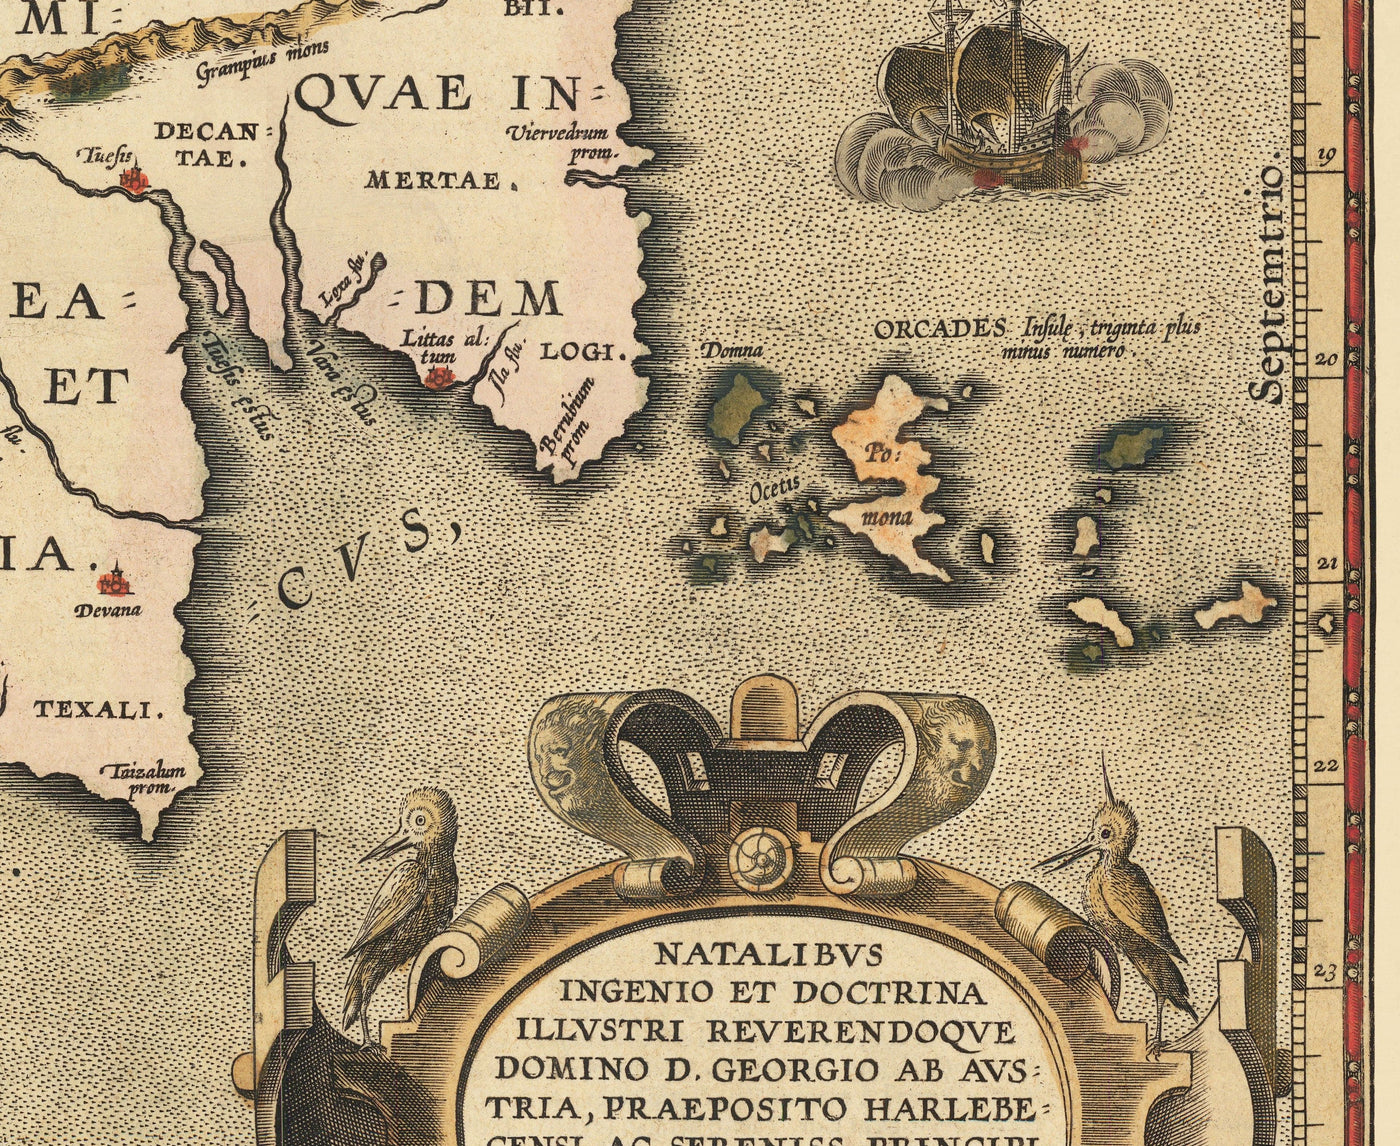 Alte Karte von britischen Inseln von Abraham Ortelius, 1595 - England, Irland, Wales, Schottland - Britannia, Hibernia